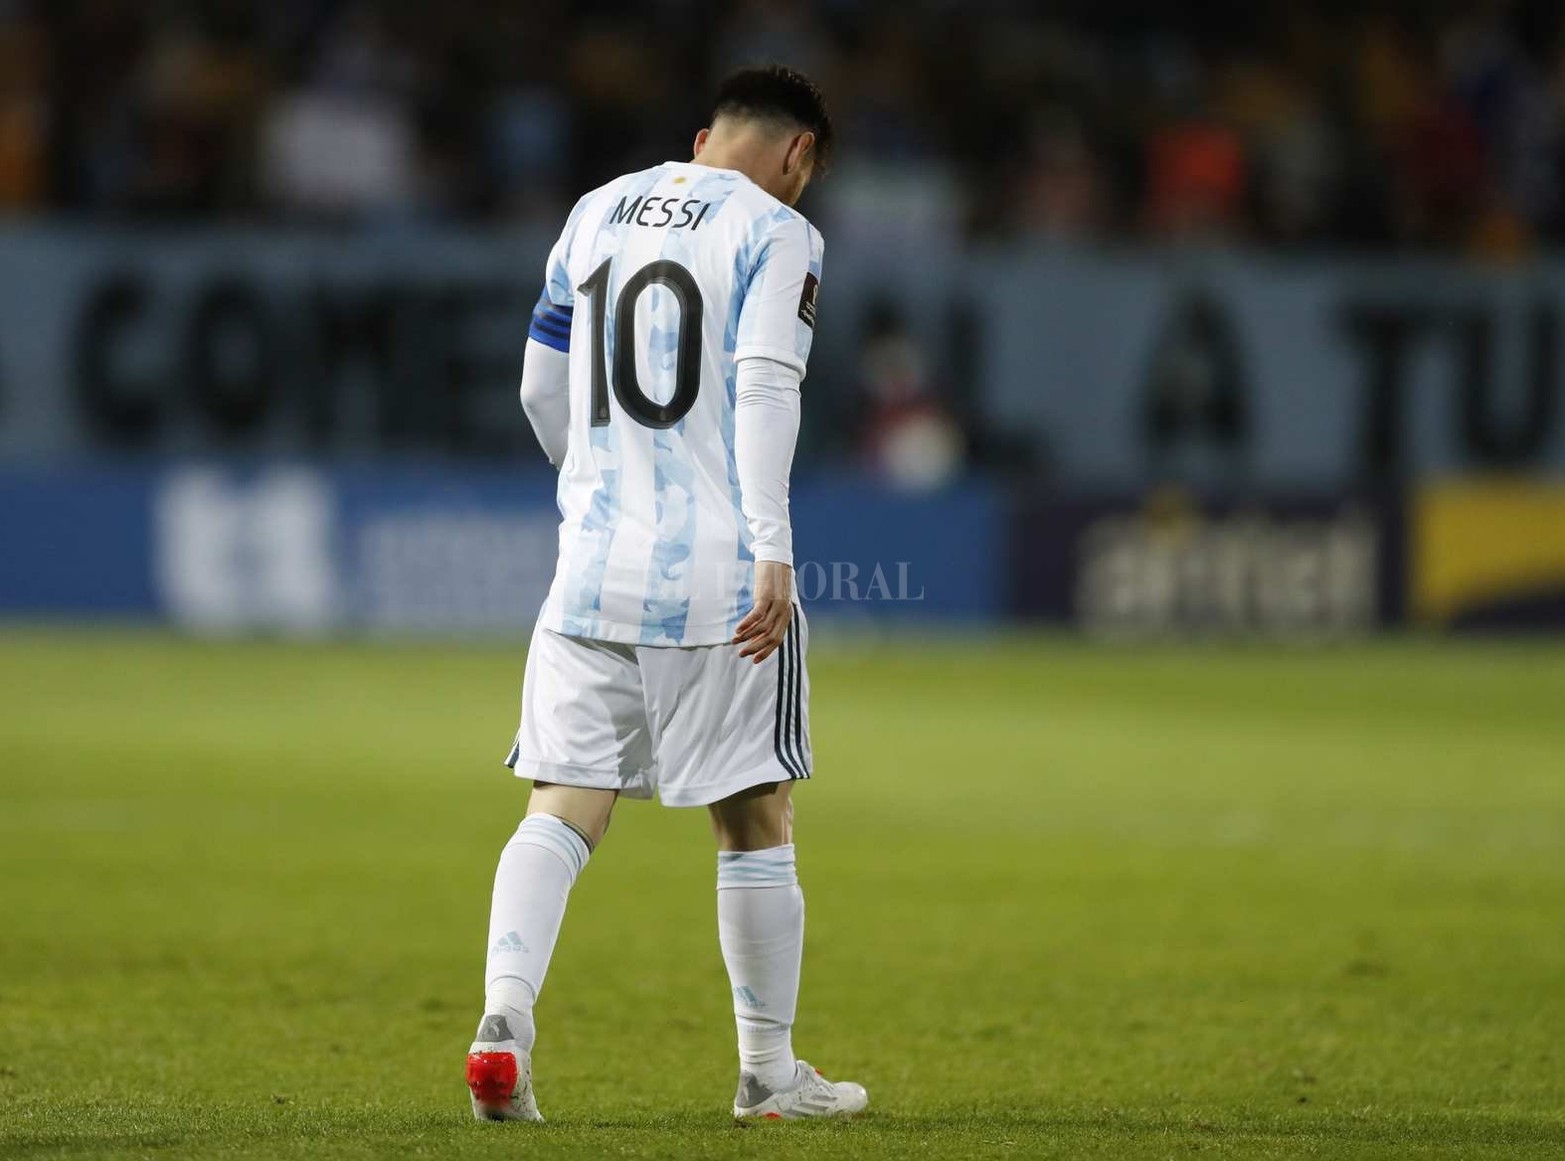 Argentino volvió a ganar (a Uruguay 1 a 0 en Montevideo) y se encamina a clasificar sin sobre salto al mundial de fútbol a disputarse en Qatar.